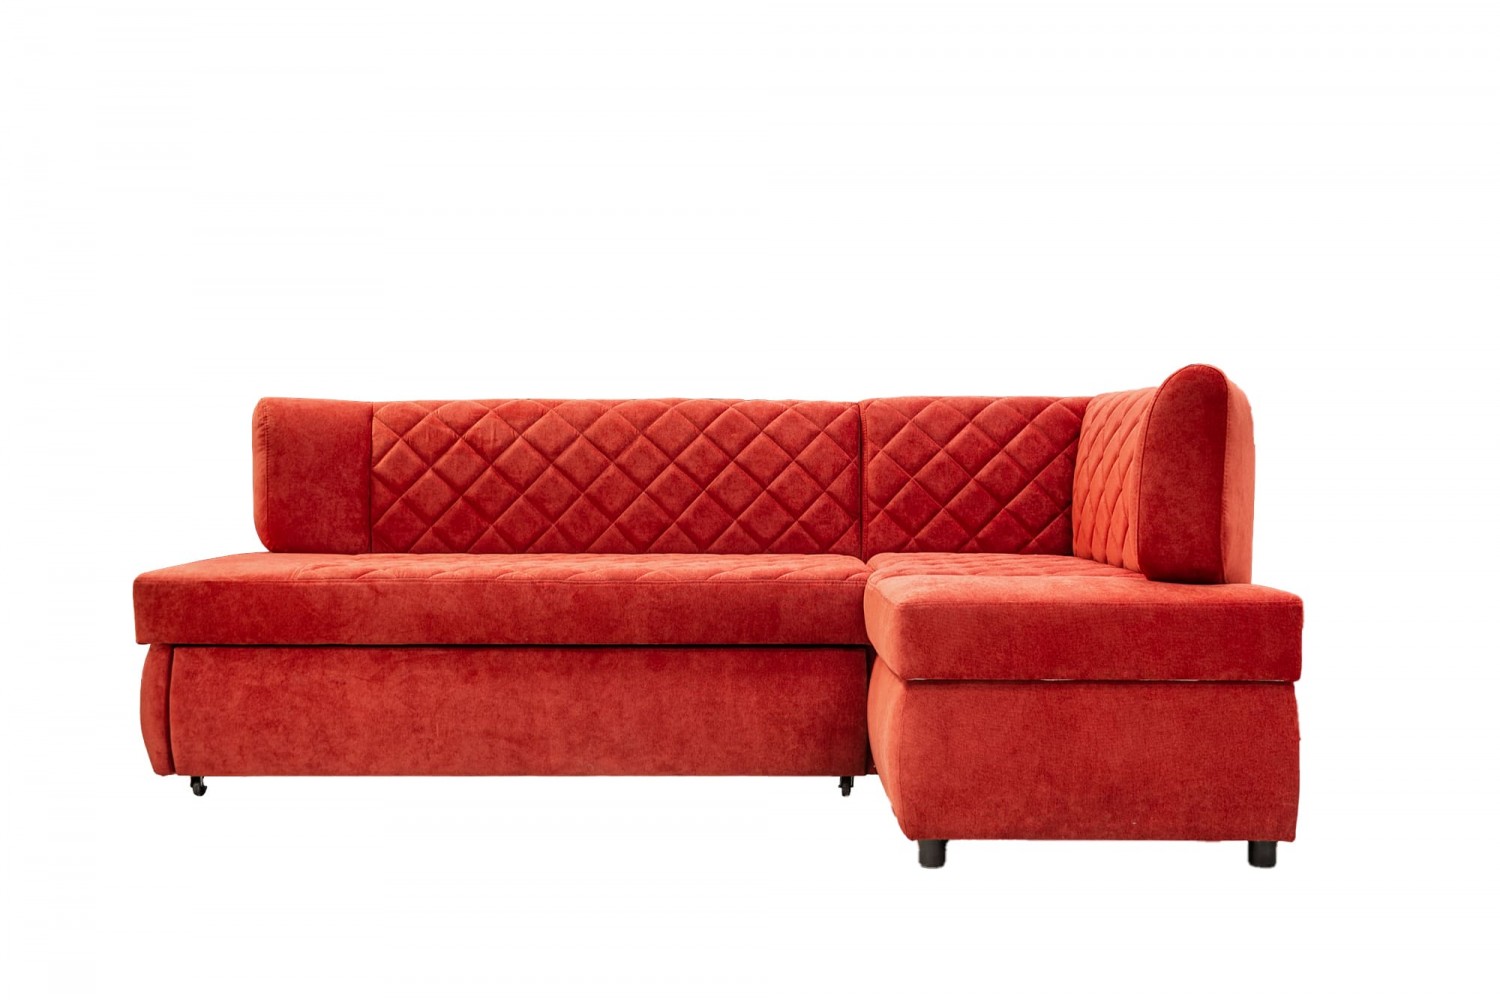 Кухонный угловой диван Ульяна-160 – купить в Москве по цене 30 440 руб. в интернет-магазине мебели Аната-Мебель